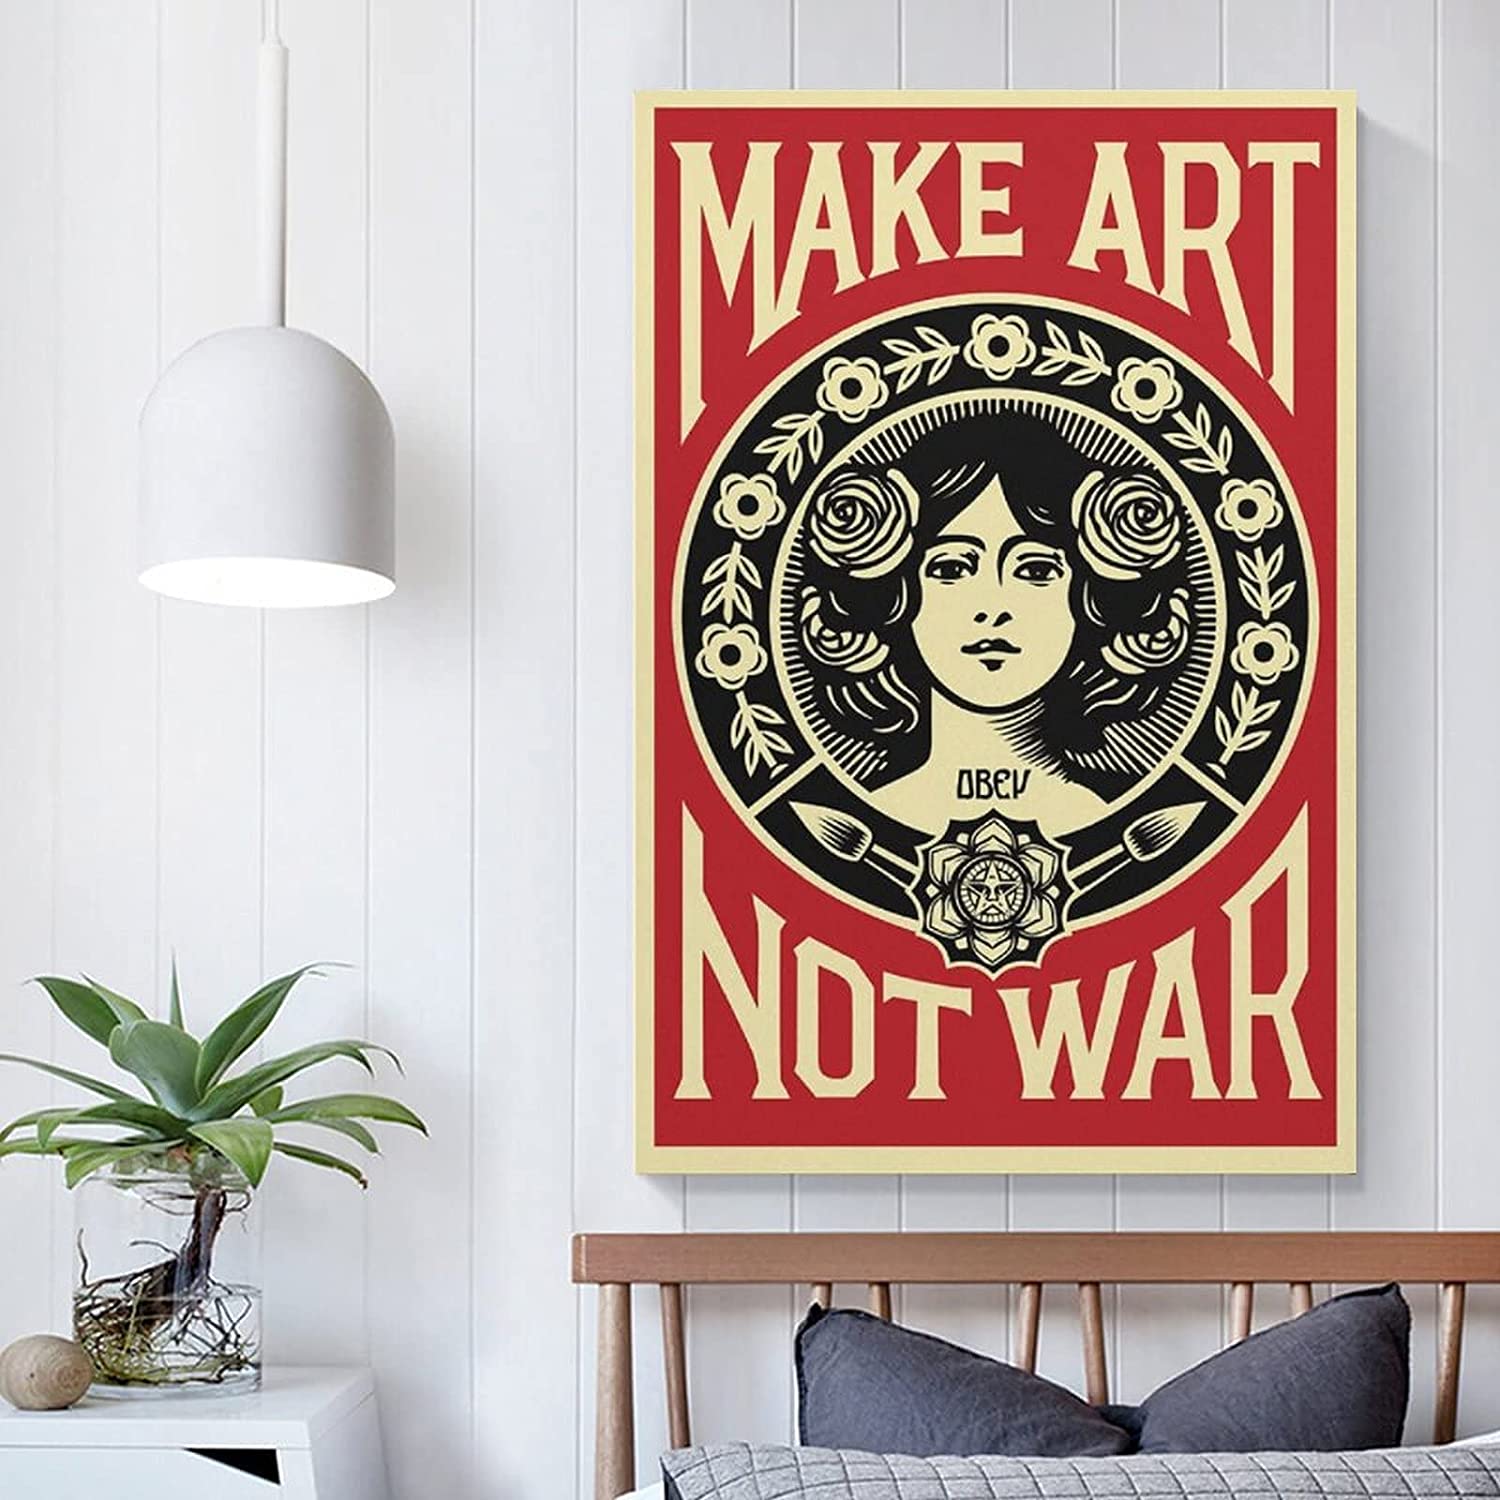 Affiche Make Art Not War - /medias/166712543511.jpg